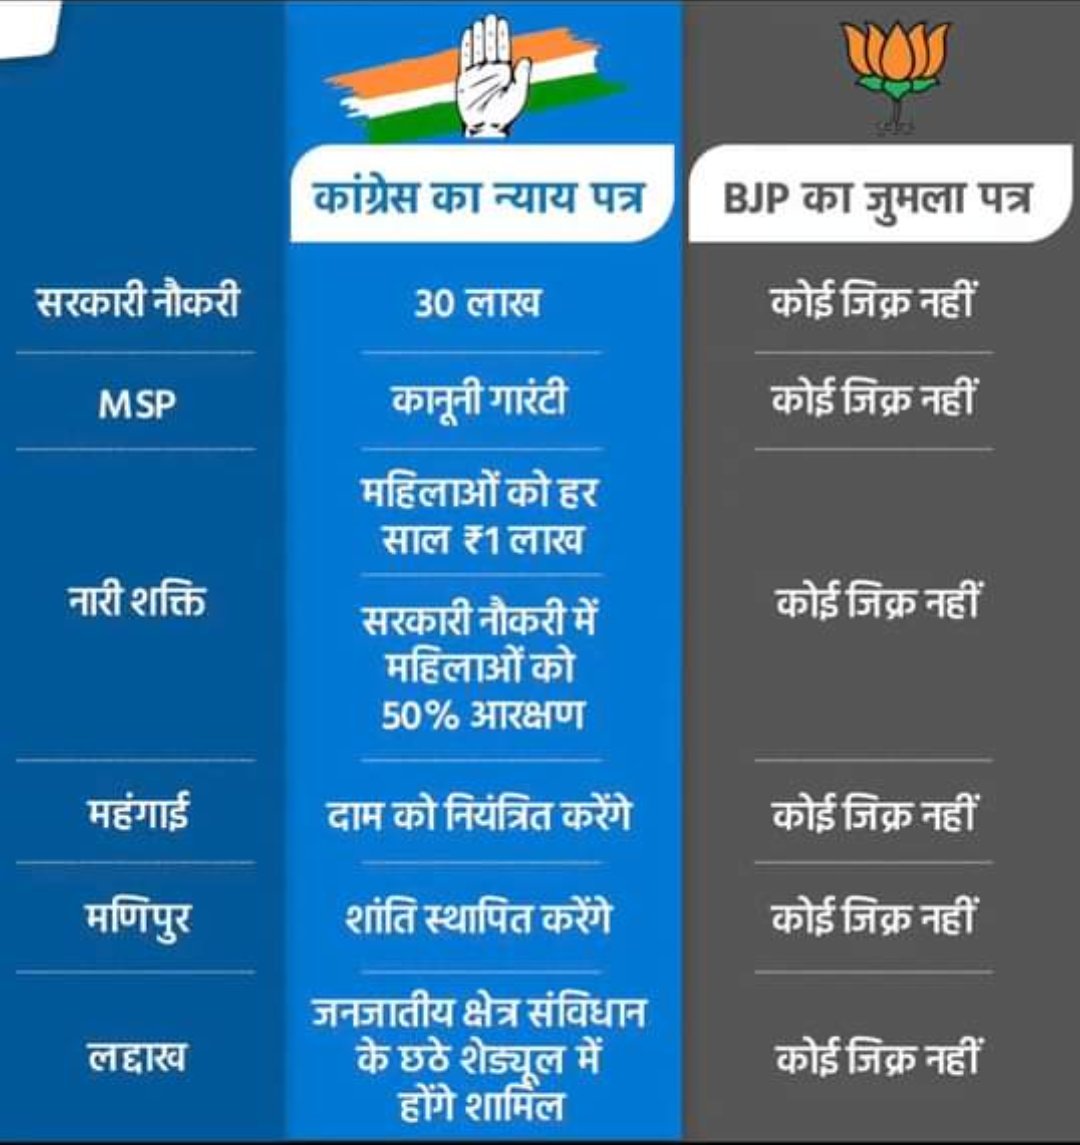 कांग्रेस का न्याय पत्र और बीजेपी का जुमला पत्र।

दोनों में फ़र्क साफ़ है।

जनता अब जाग चुकी है। भाजपा व भारतीय प्रधानमंत्री मोदीजी के अहंकार की हार निश्चित है।

कांग्रेस के नेतृत्व में इंडिया गठबंधन विजयी होगा।

#आ_रही_है_कांग्रेस

#जीतेगा_INDIA

#Paanch_Nyay_Pachees_Guarantees